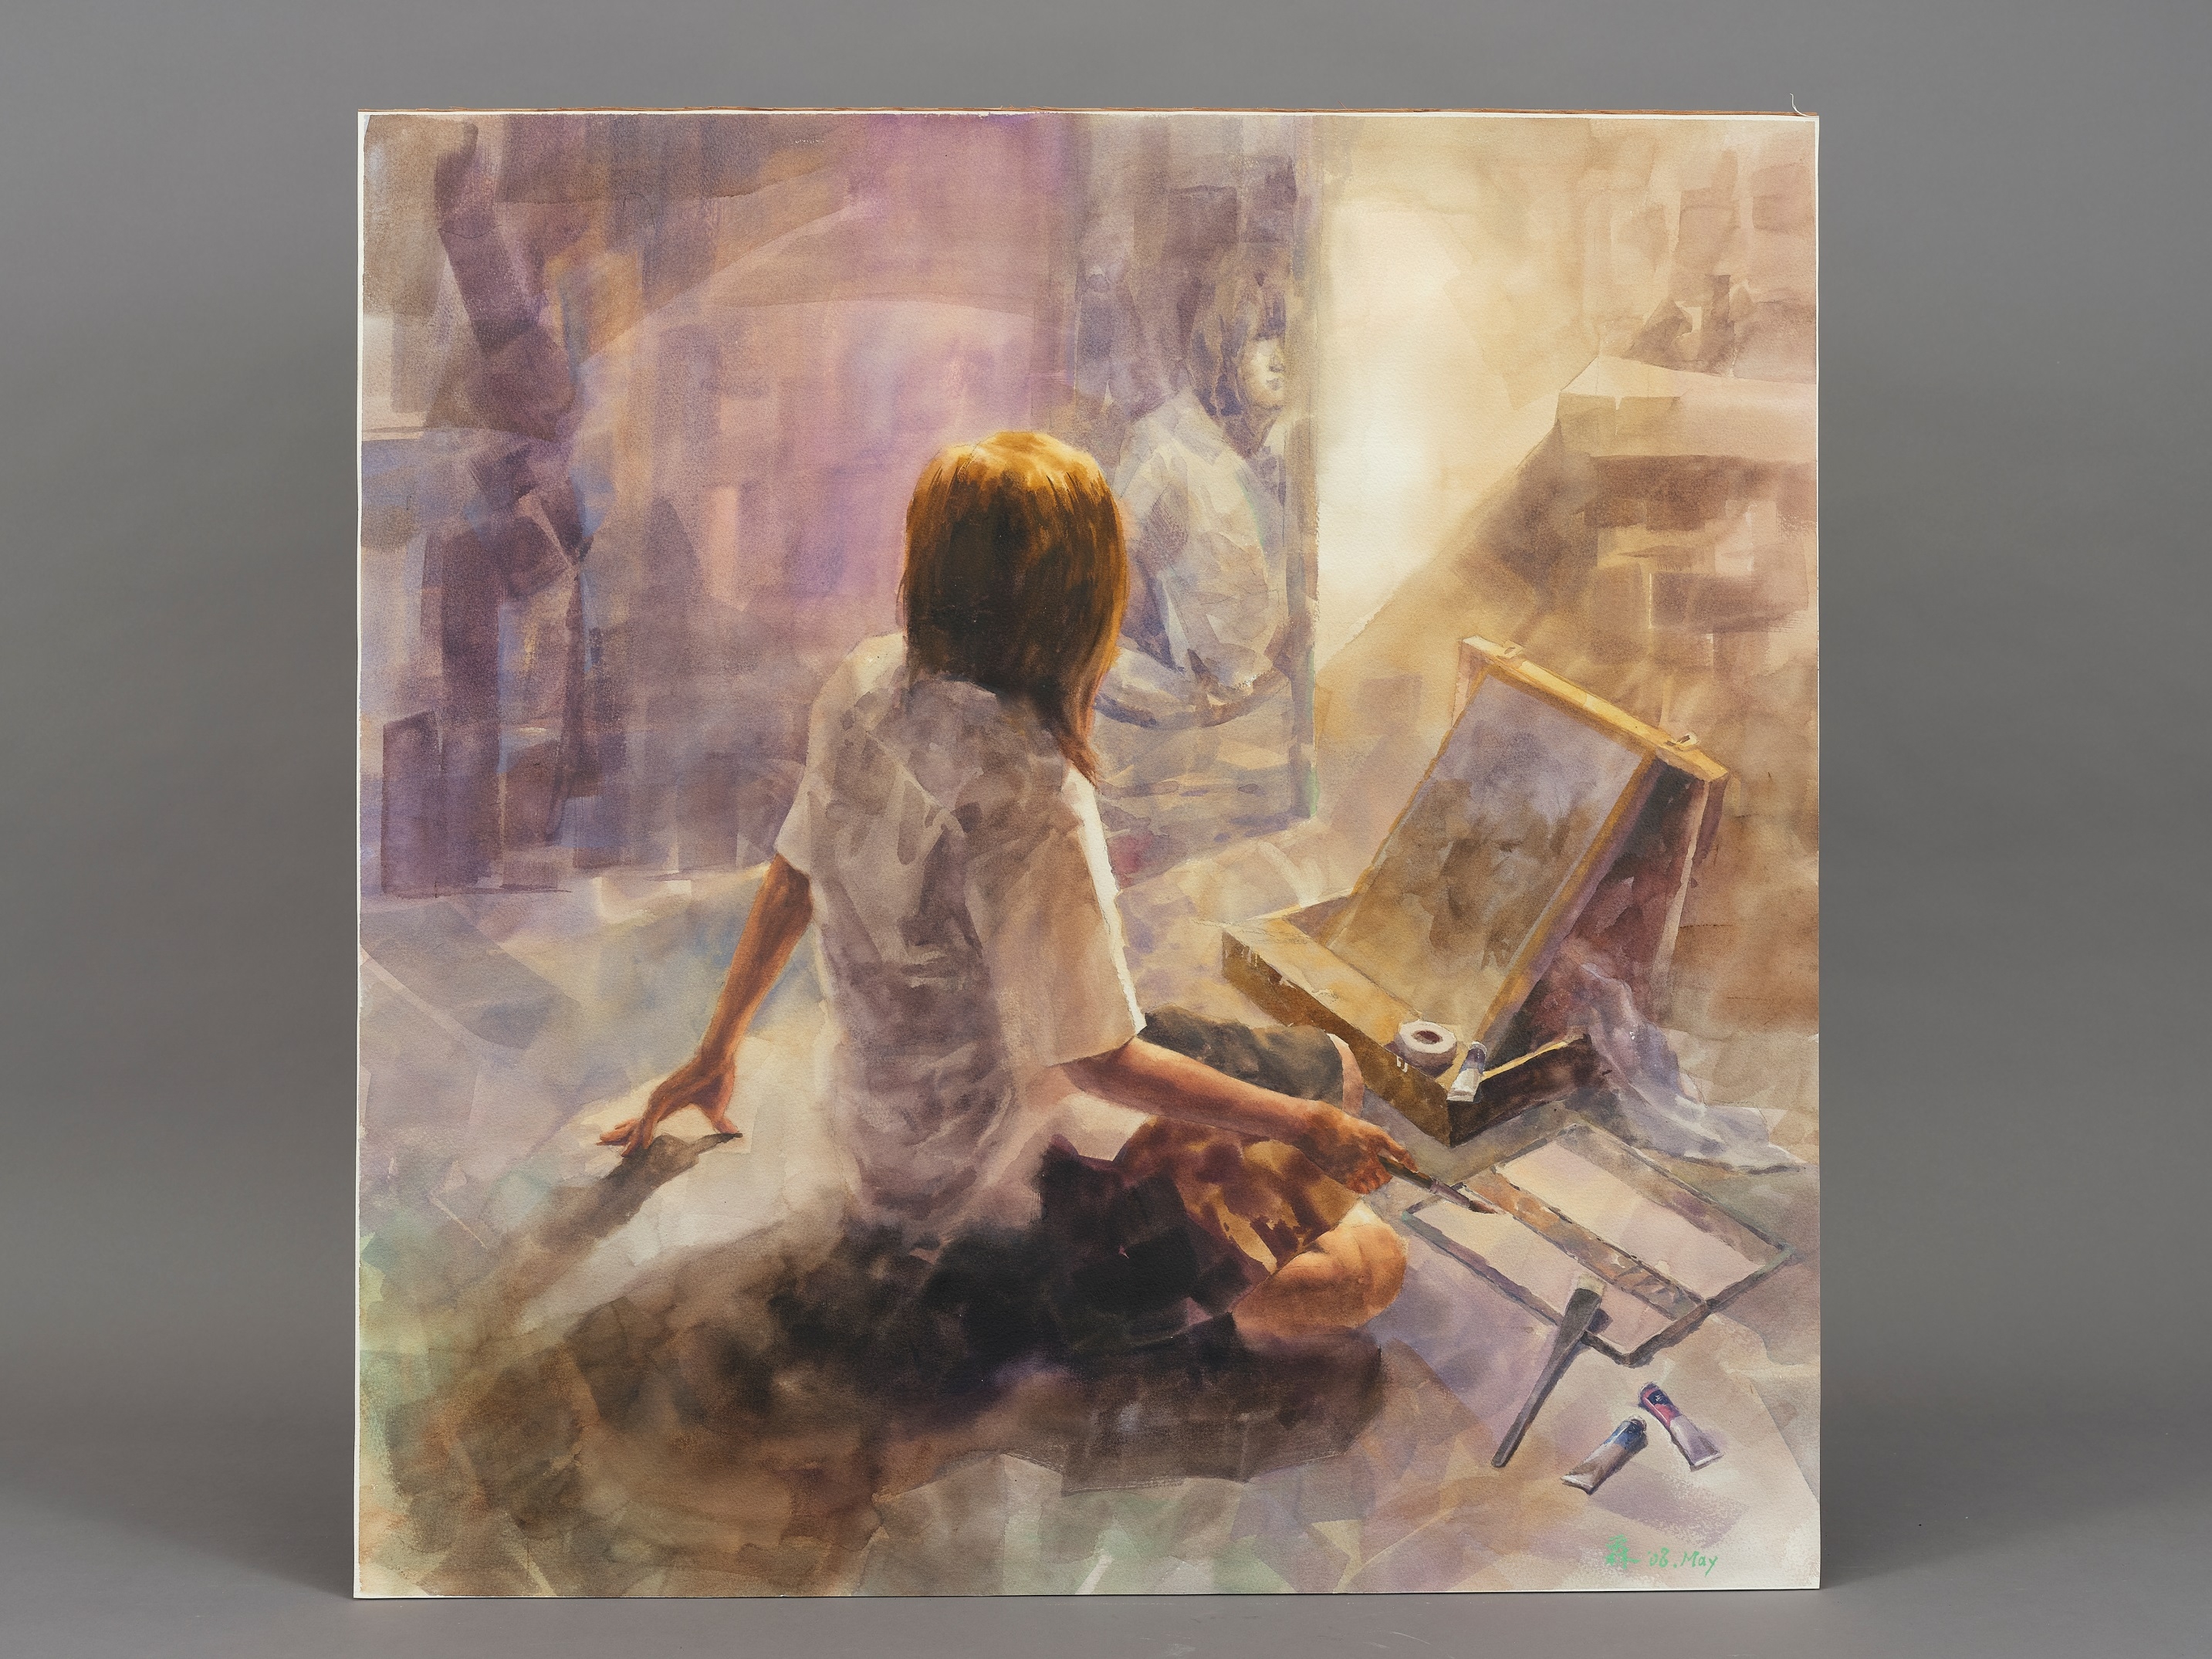 身著制服的女孩坐在鏡子前方凝視著自己，在她身體前方的是一套畫畫的工具，畫箱、畫板、畫紙、顏料、紙膠帶、調色盤、排筆，以及手上的畫筆。